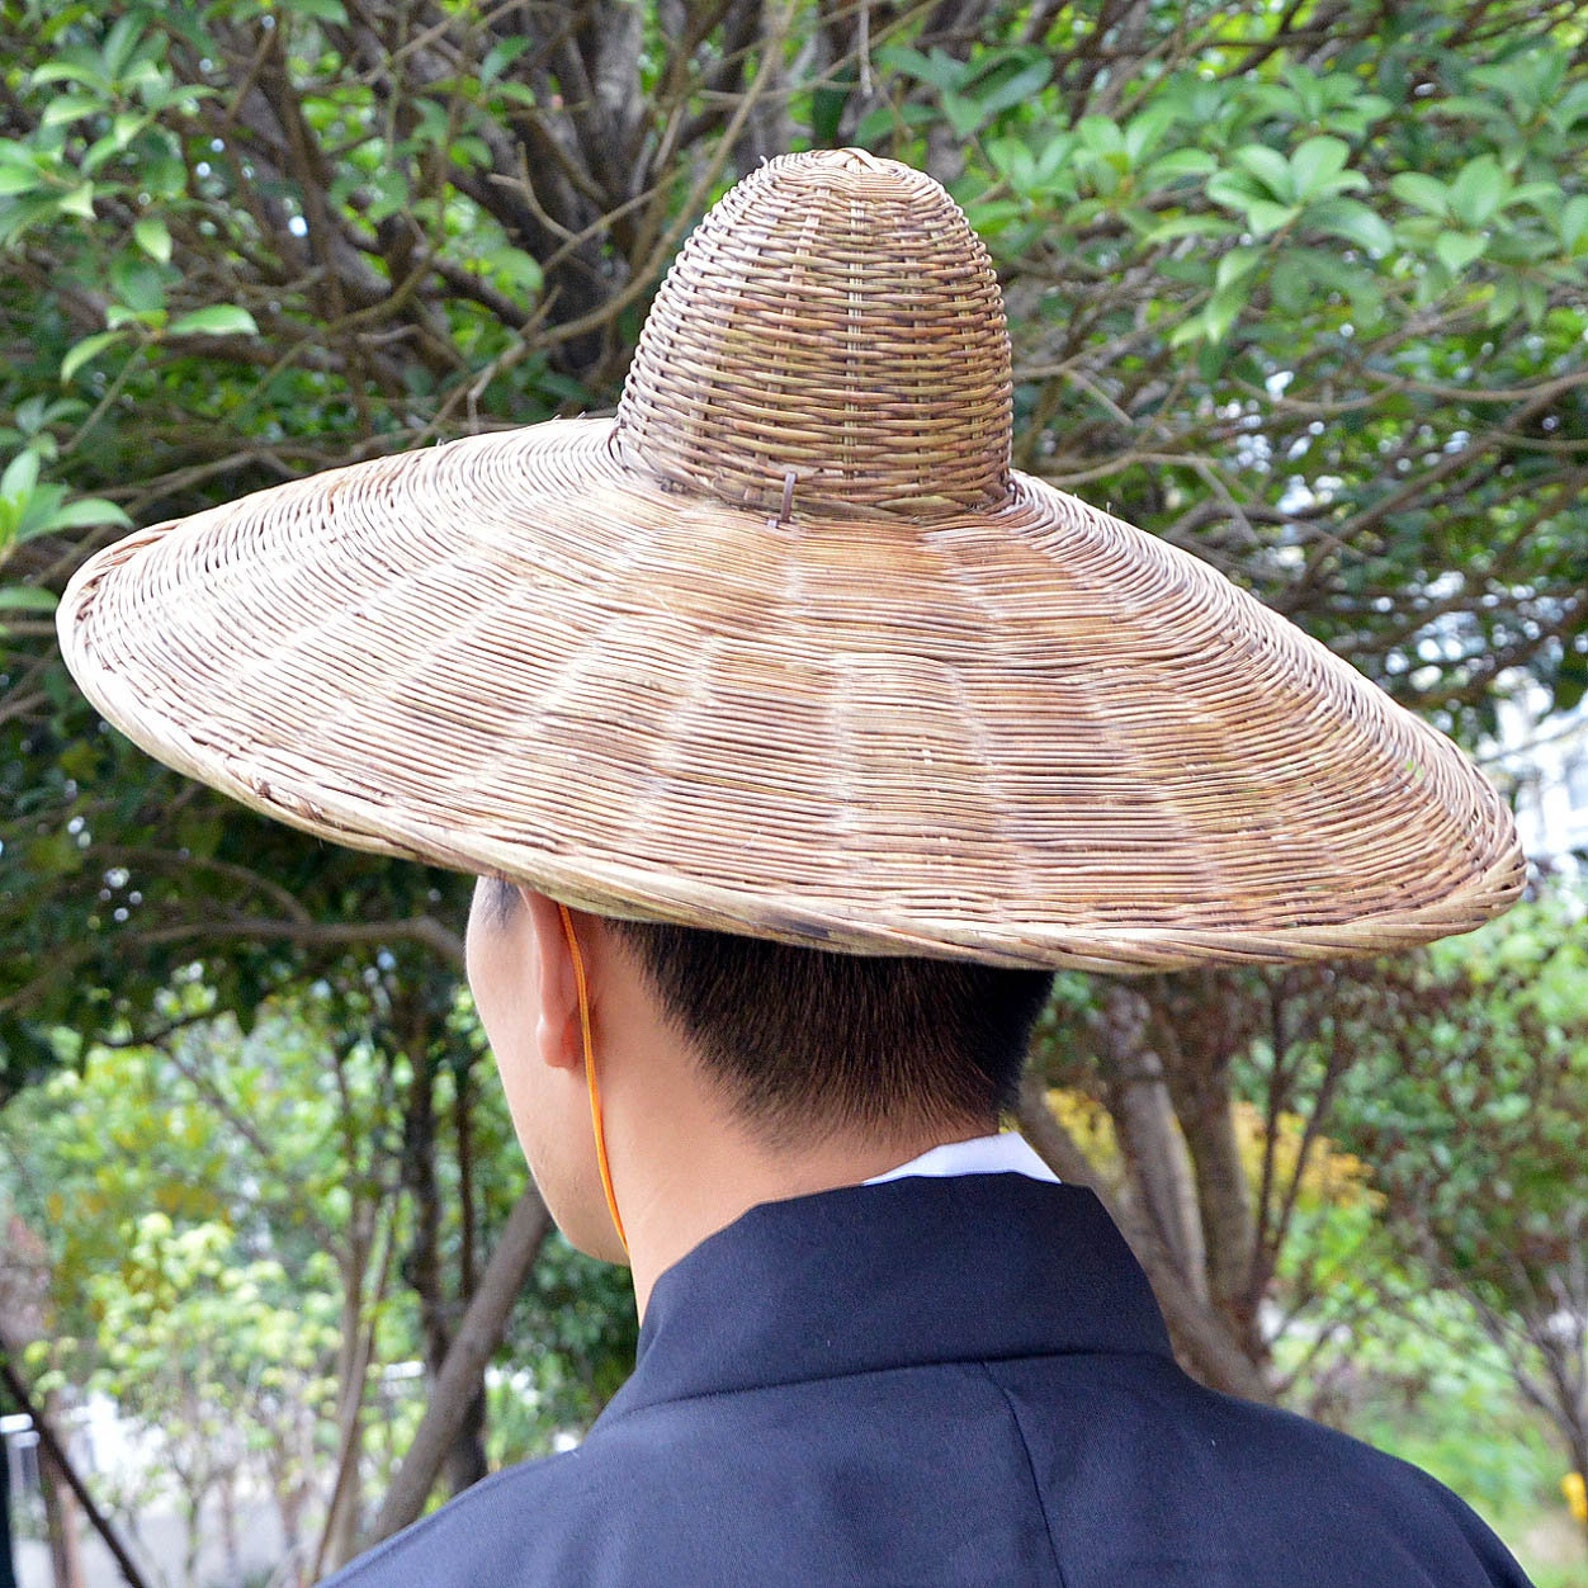 Bamboo hat. Шляпа амигаса бамбуковая. Бамбуковая шляпа доули. Доули шляпа китайская. 2д шляпы древнего Китая.